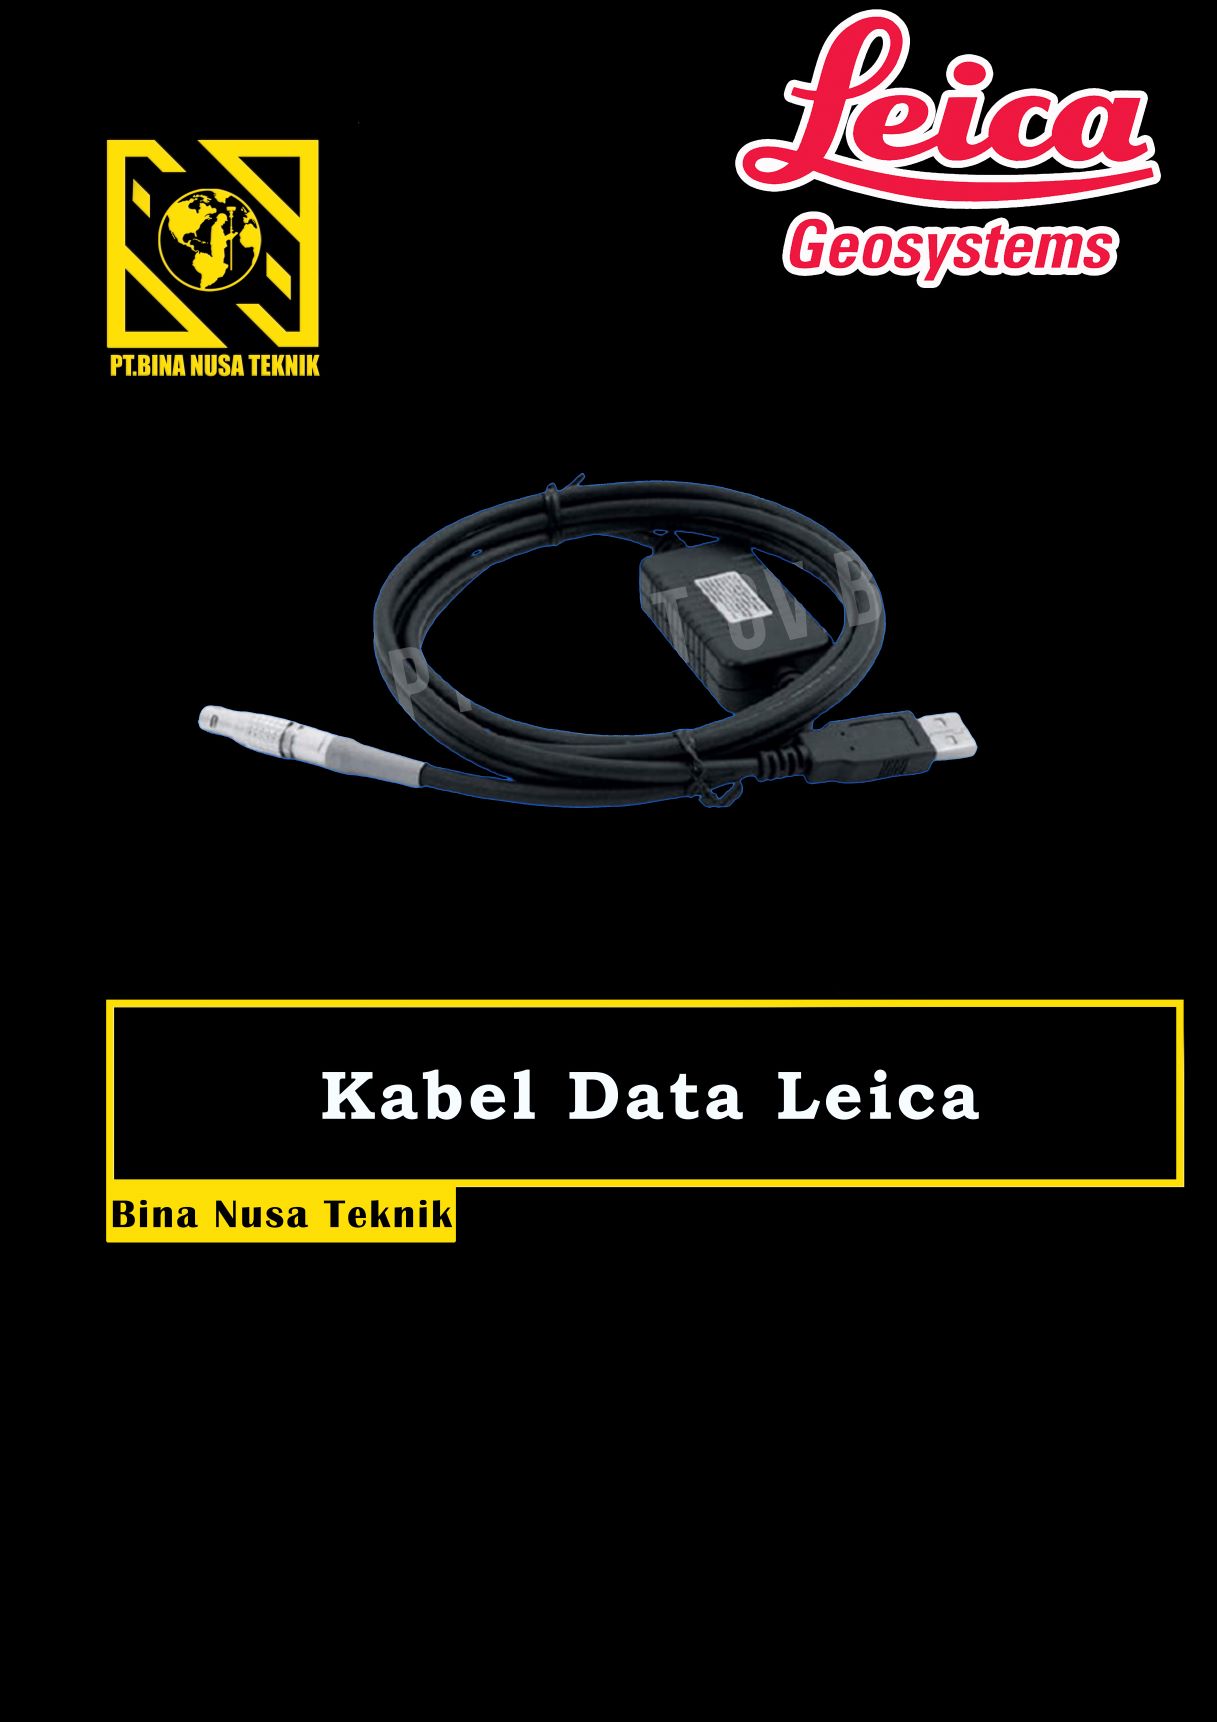 kabel data Leica